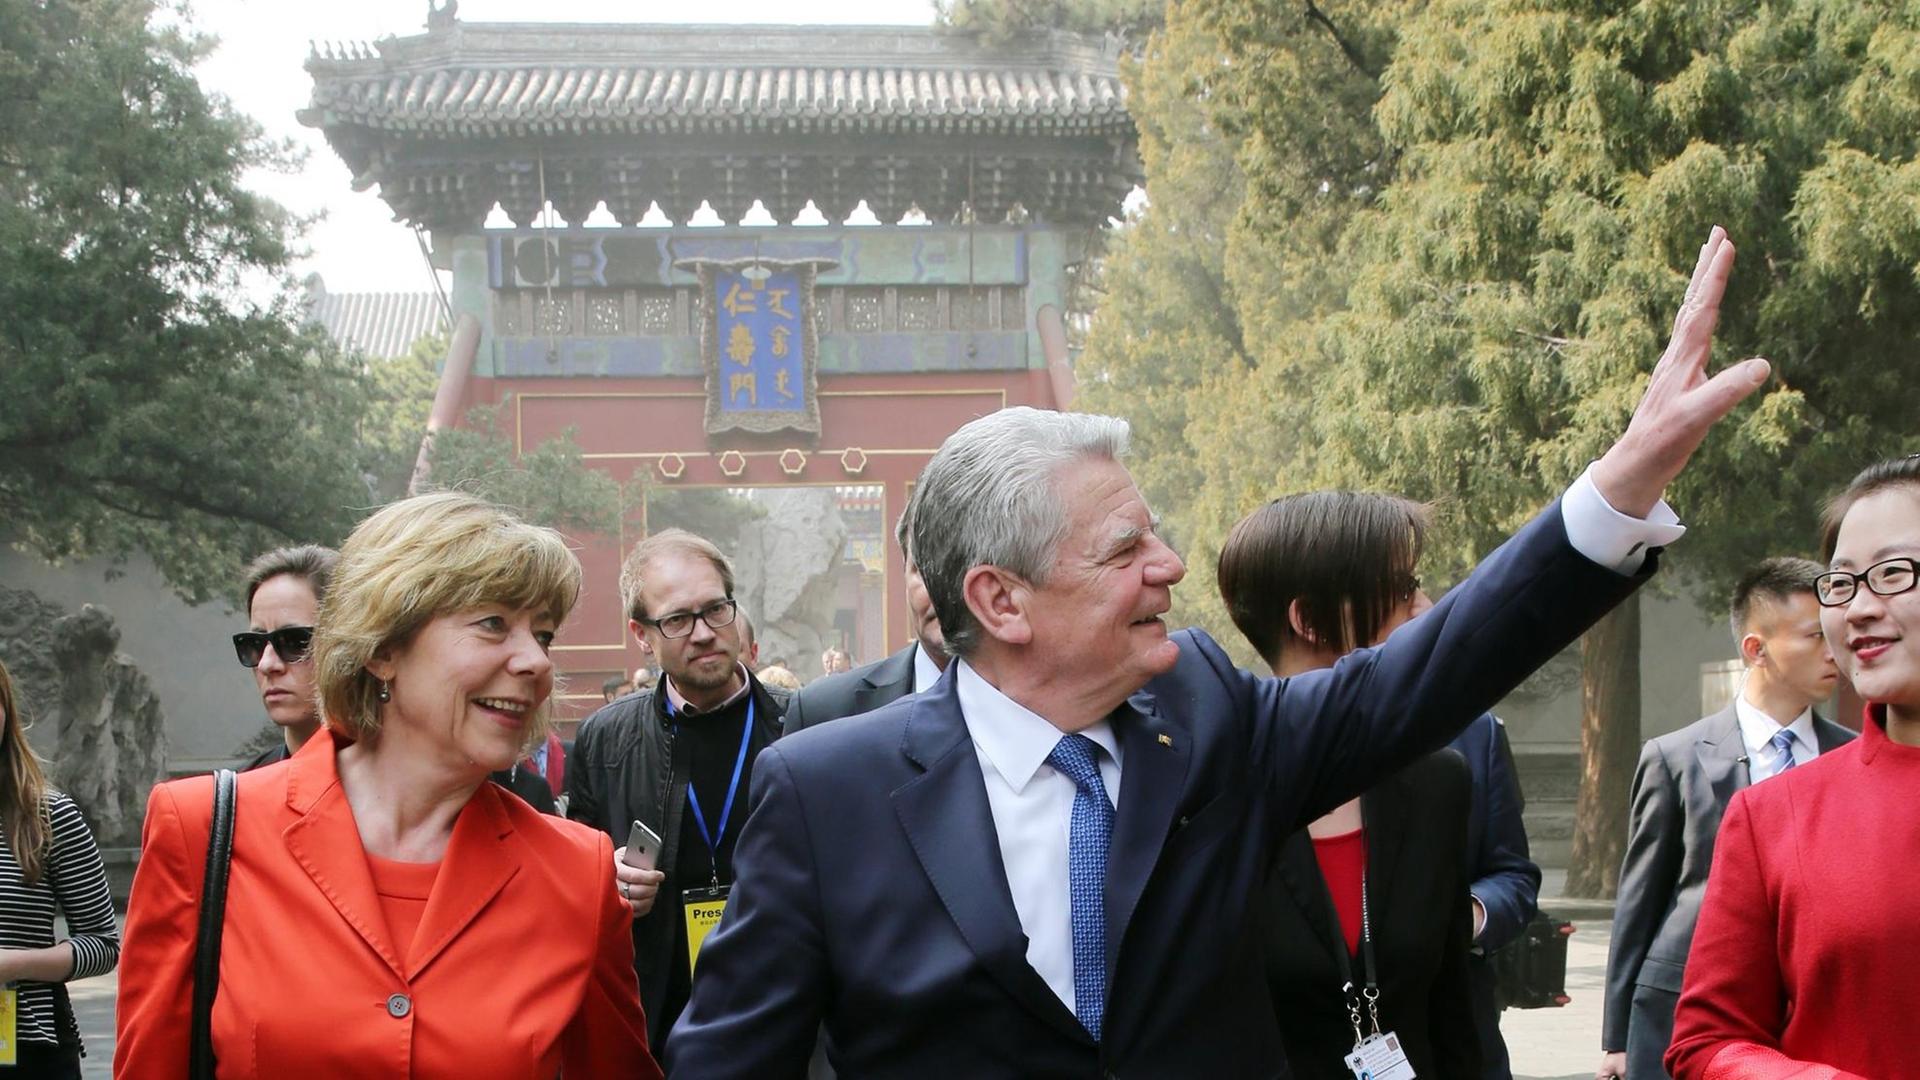 Man sieht den Bundes-Präsidenten und seine Partnerin. Sie heißen Joachim Gauck und Daniela Schadt. Im Hintergrund sieht man einen Tempel.